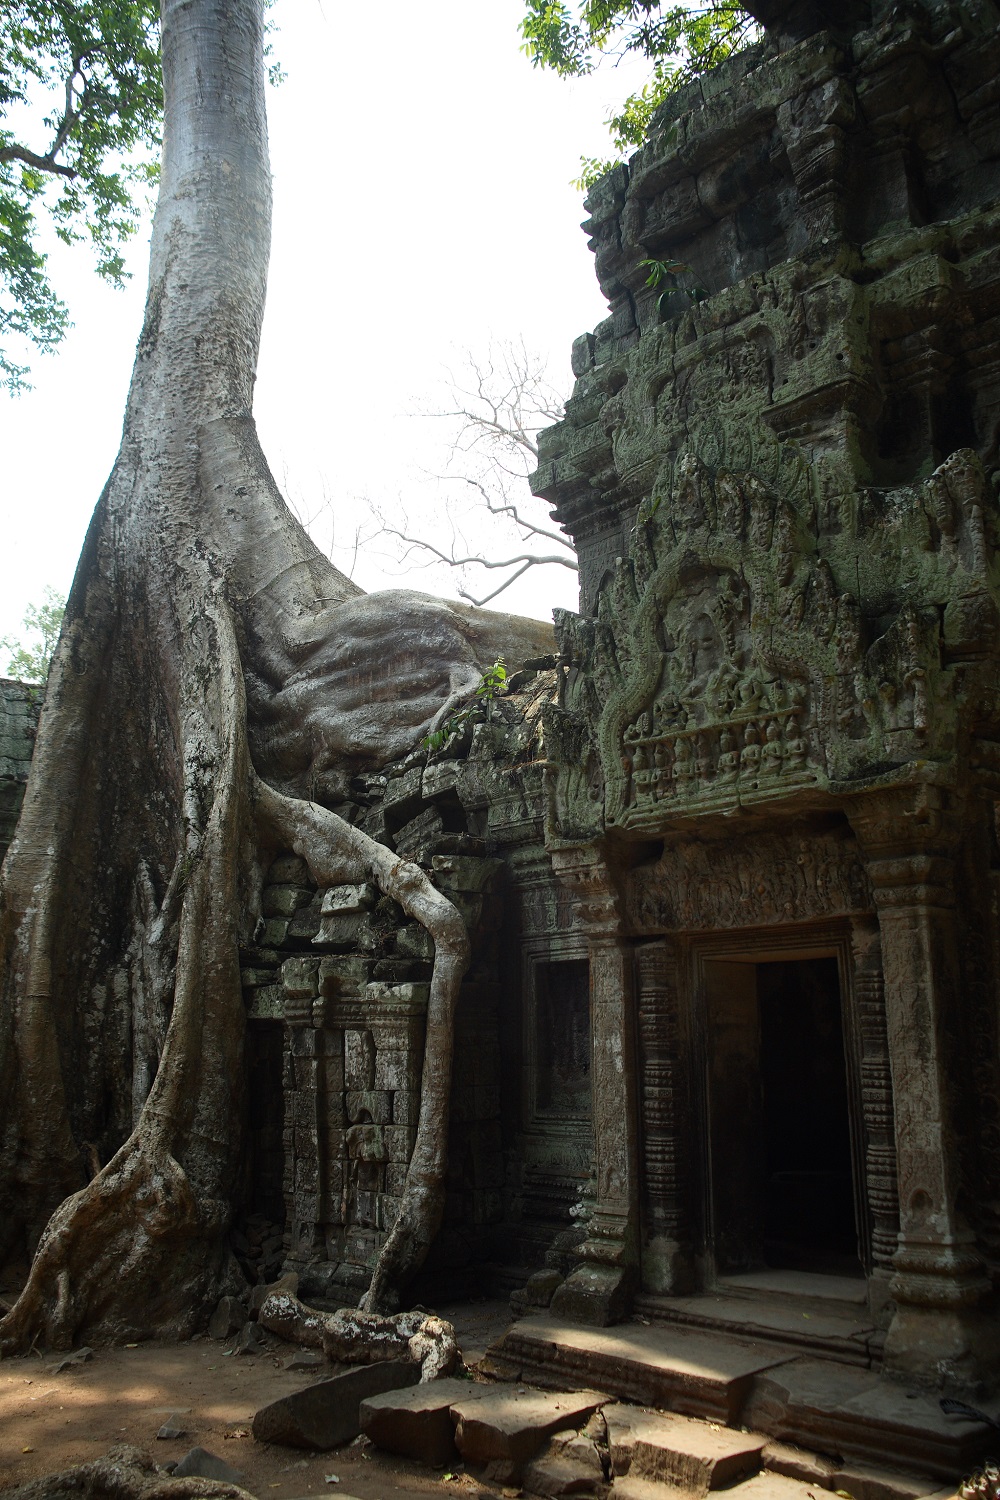   Приключения: Ангкор Ват — ужас и мистика древних. Храм древних богов кхмеров - фото 10